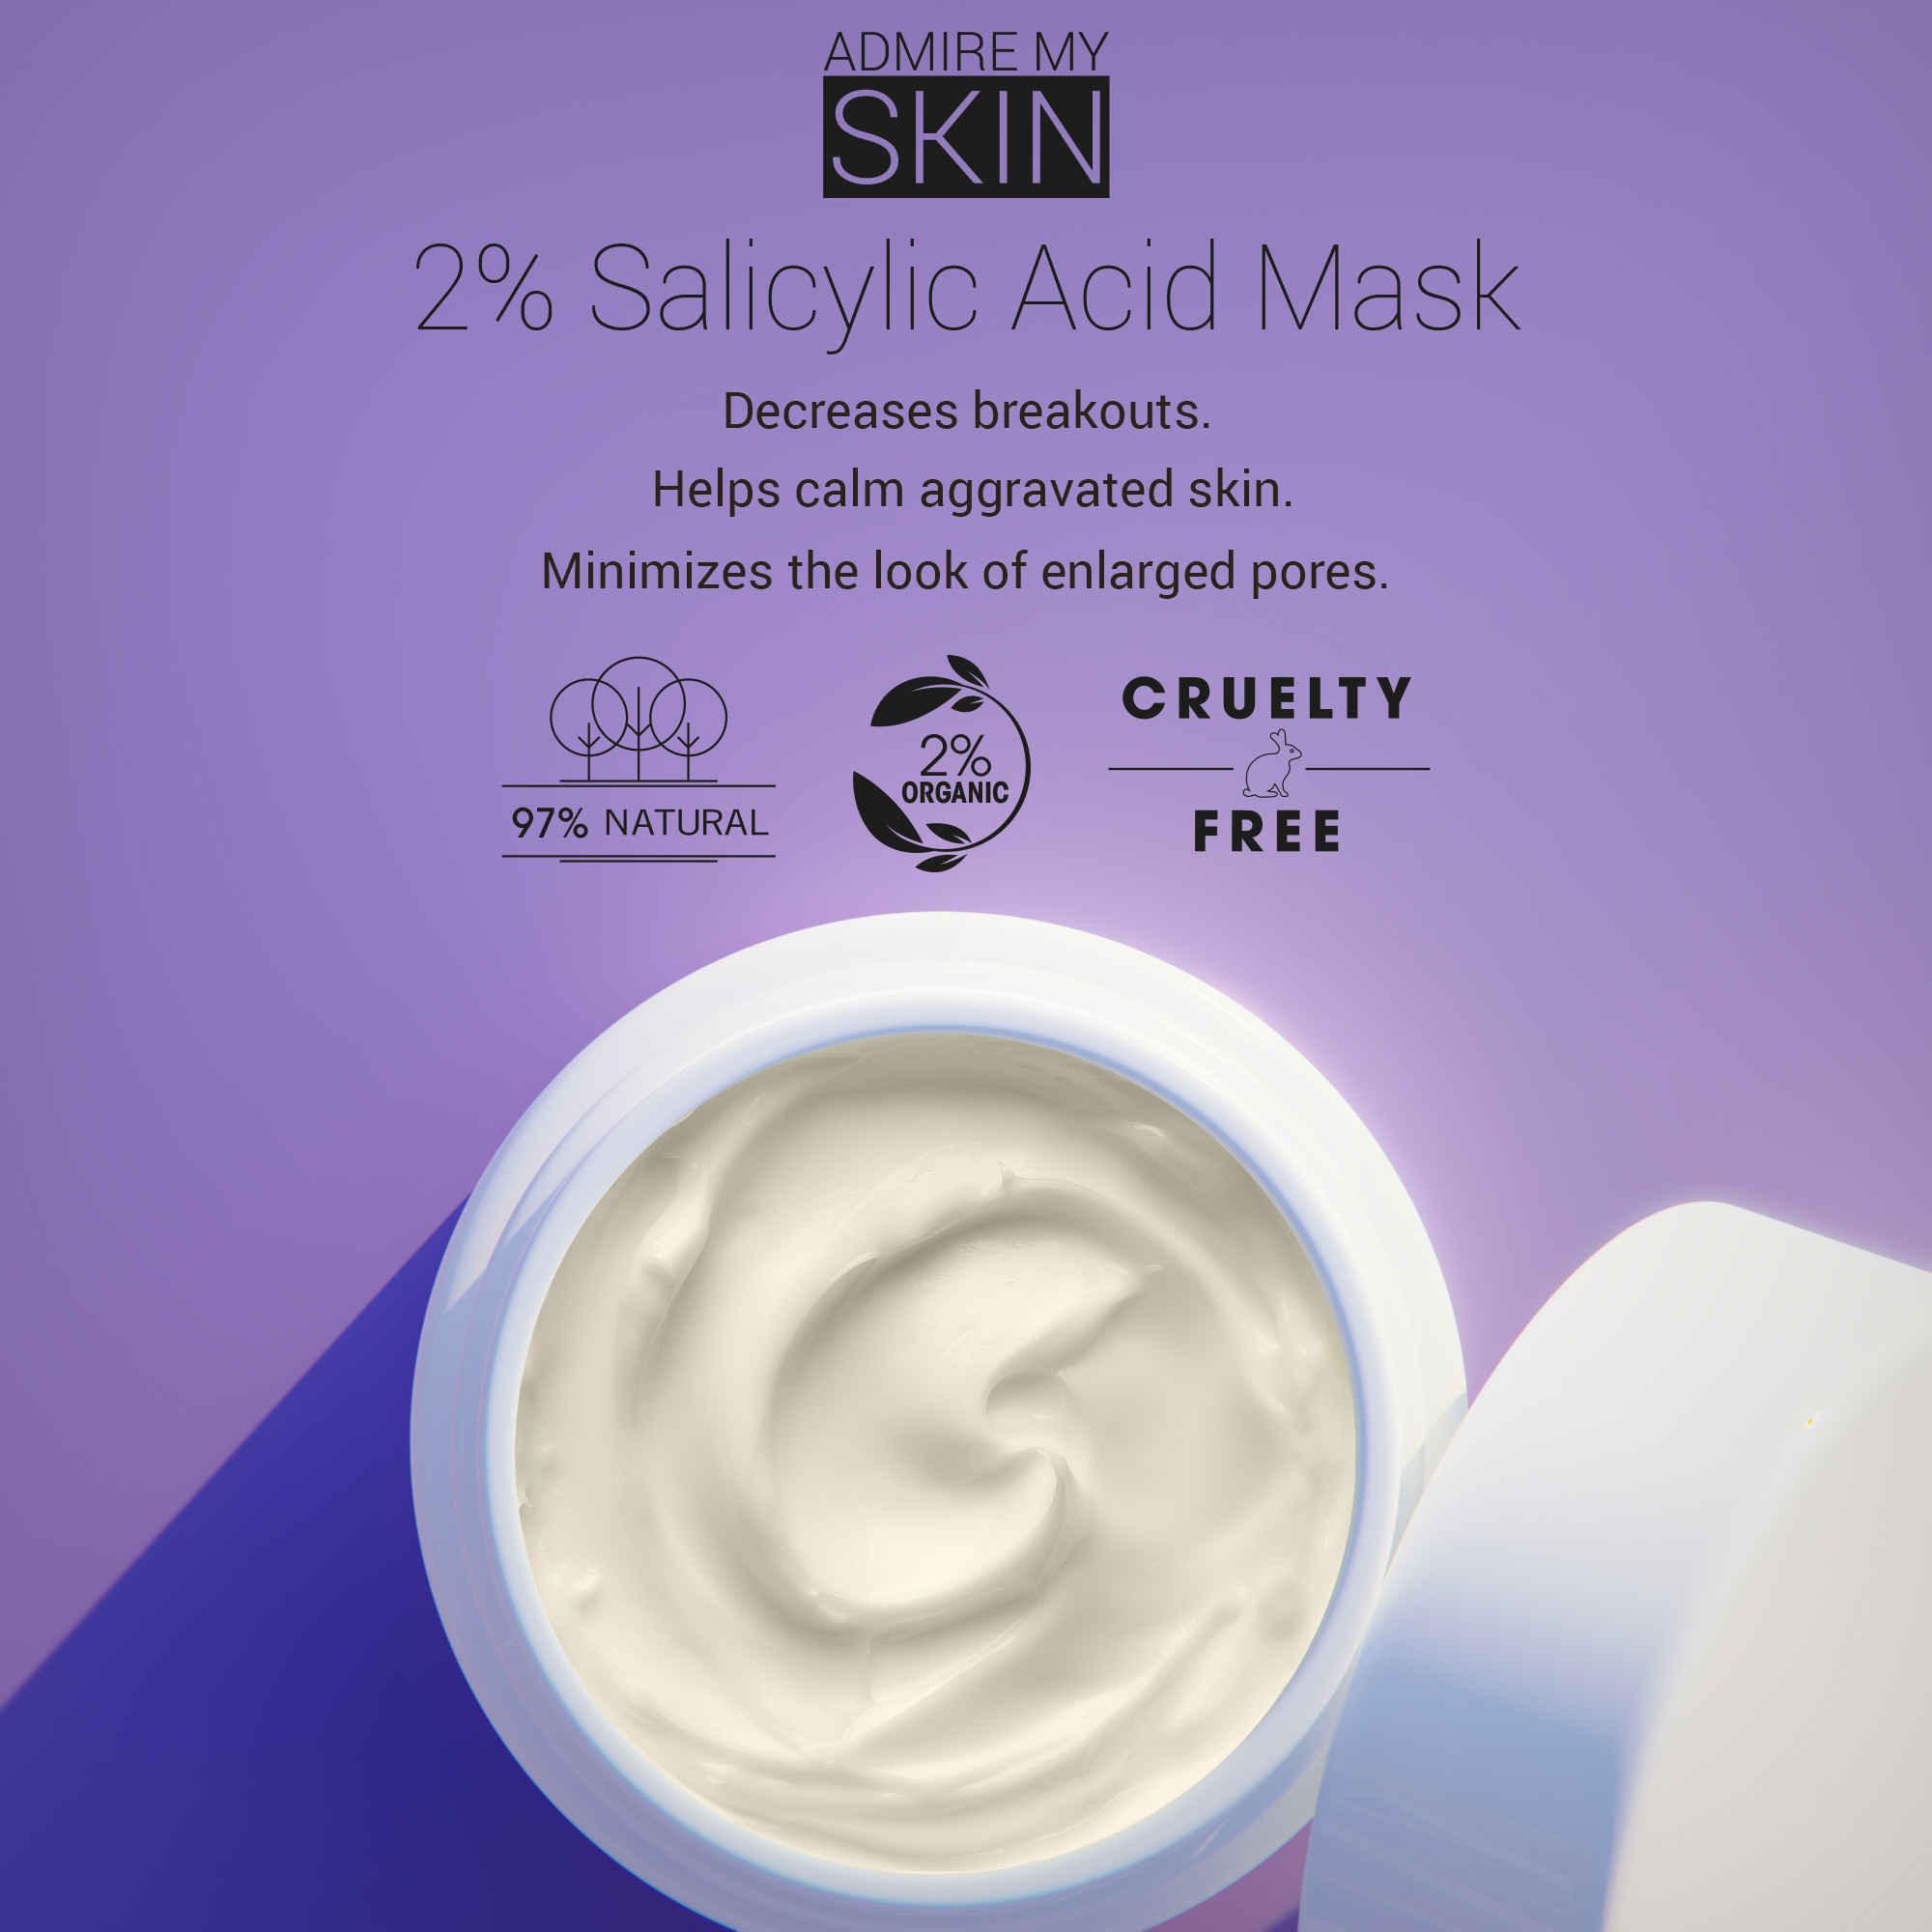 Masque facial à 2% d'acide salicylique pour l'acné - admire ma peau